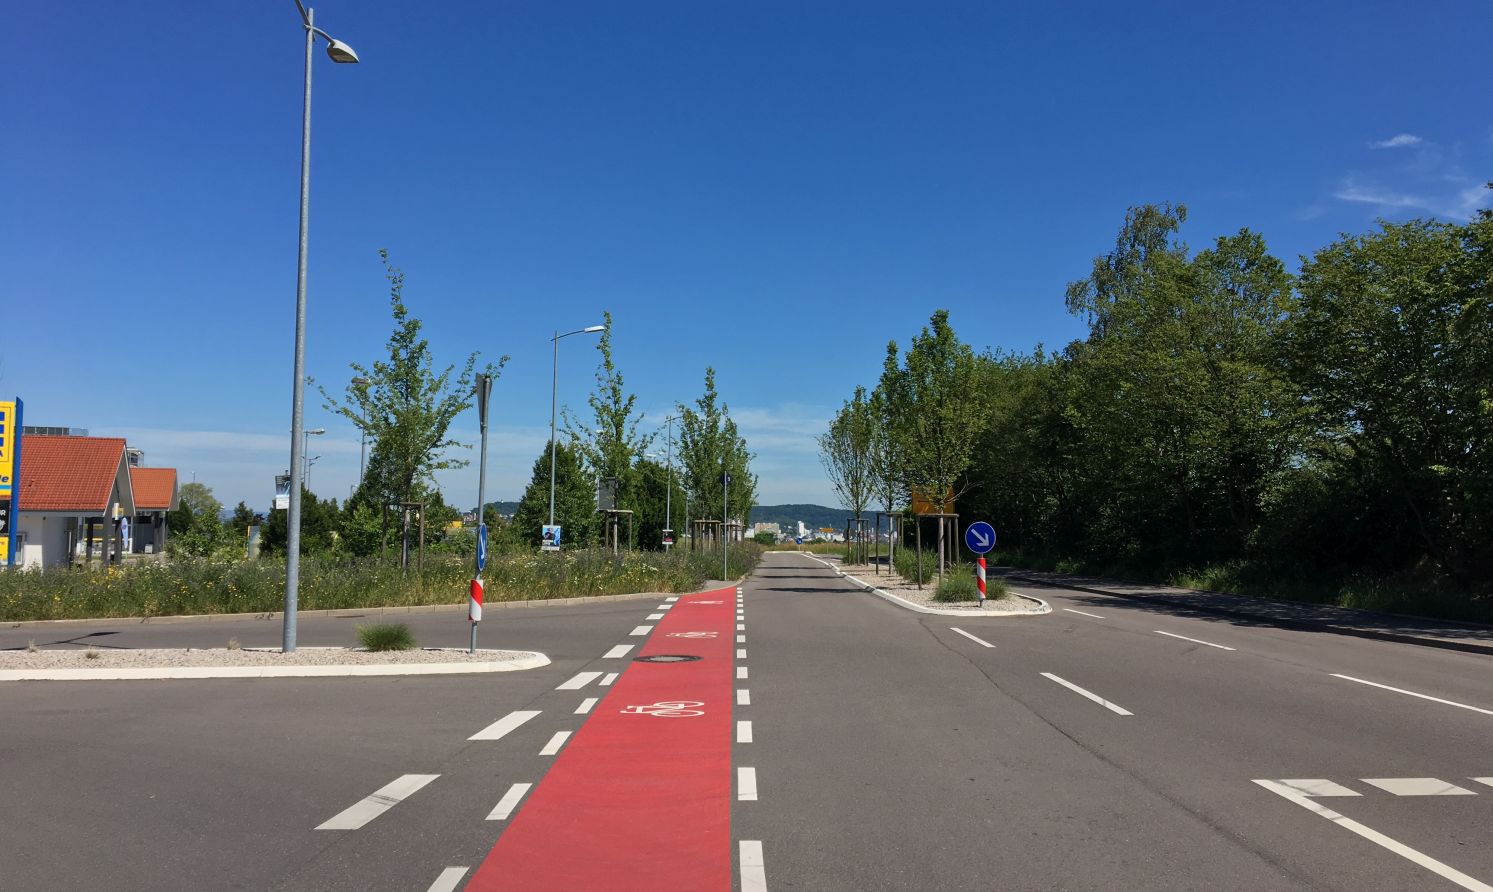 Blick entlang der Leonberger Straße mit rot-weiß markiertem Radfahrschutzstreifen auf dem Boden.